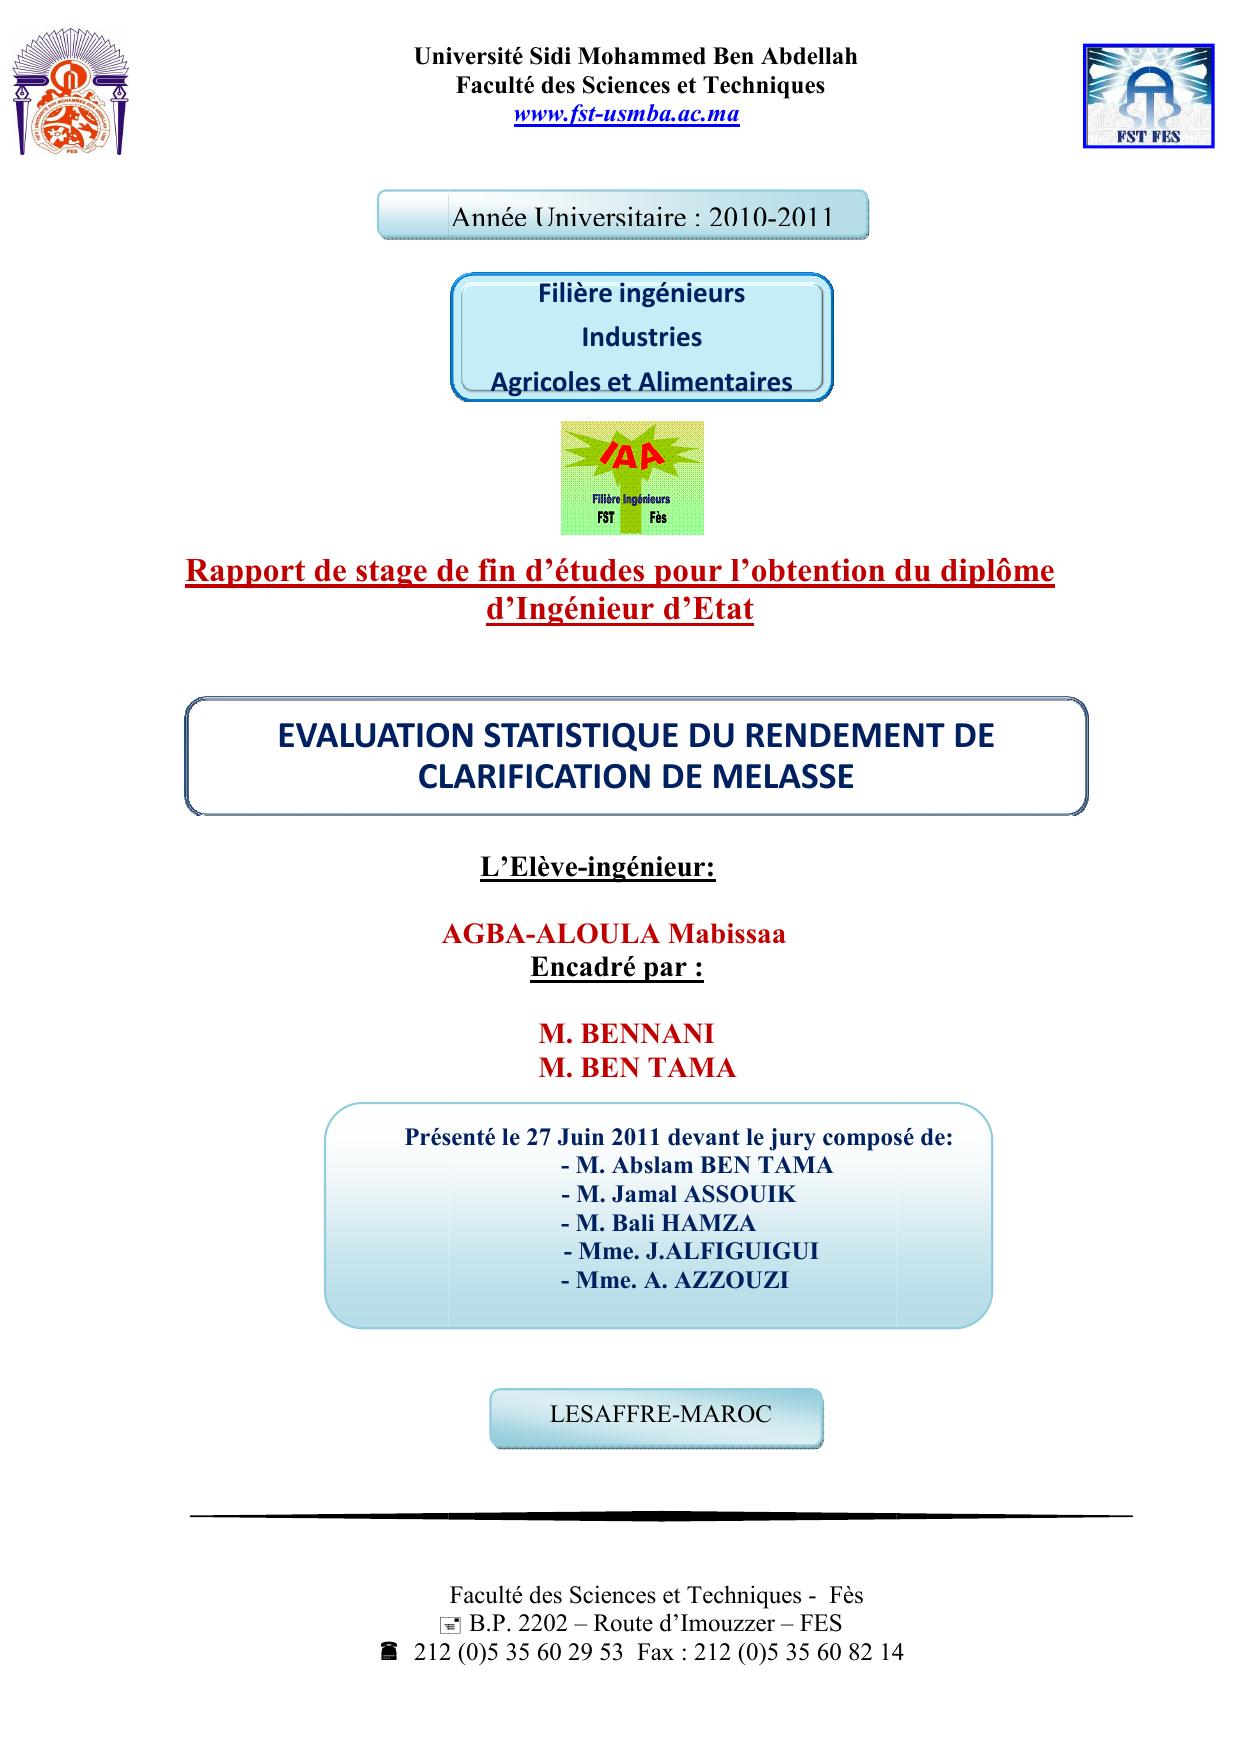 EVALUATION STATISTIQUE DU RENDEMENT DE CLARIFICATION DE MELASSE